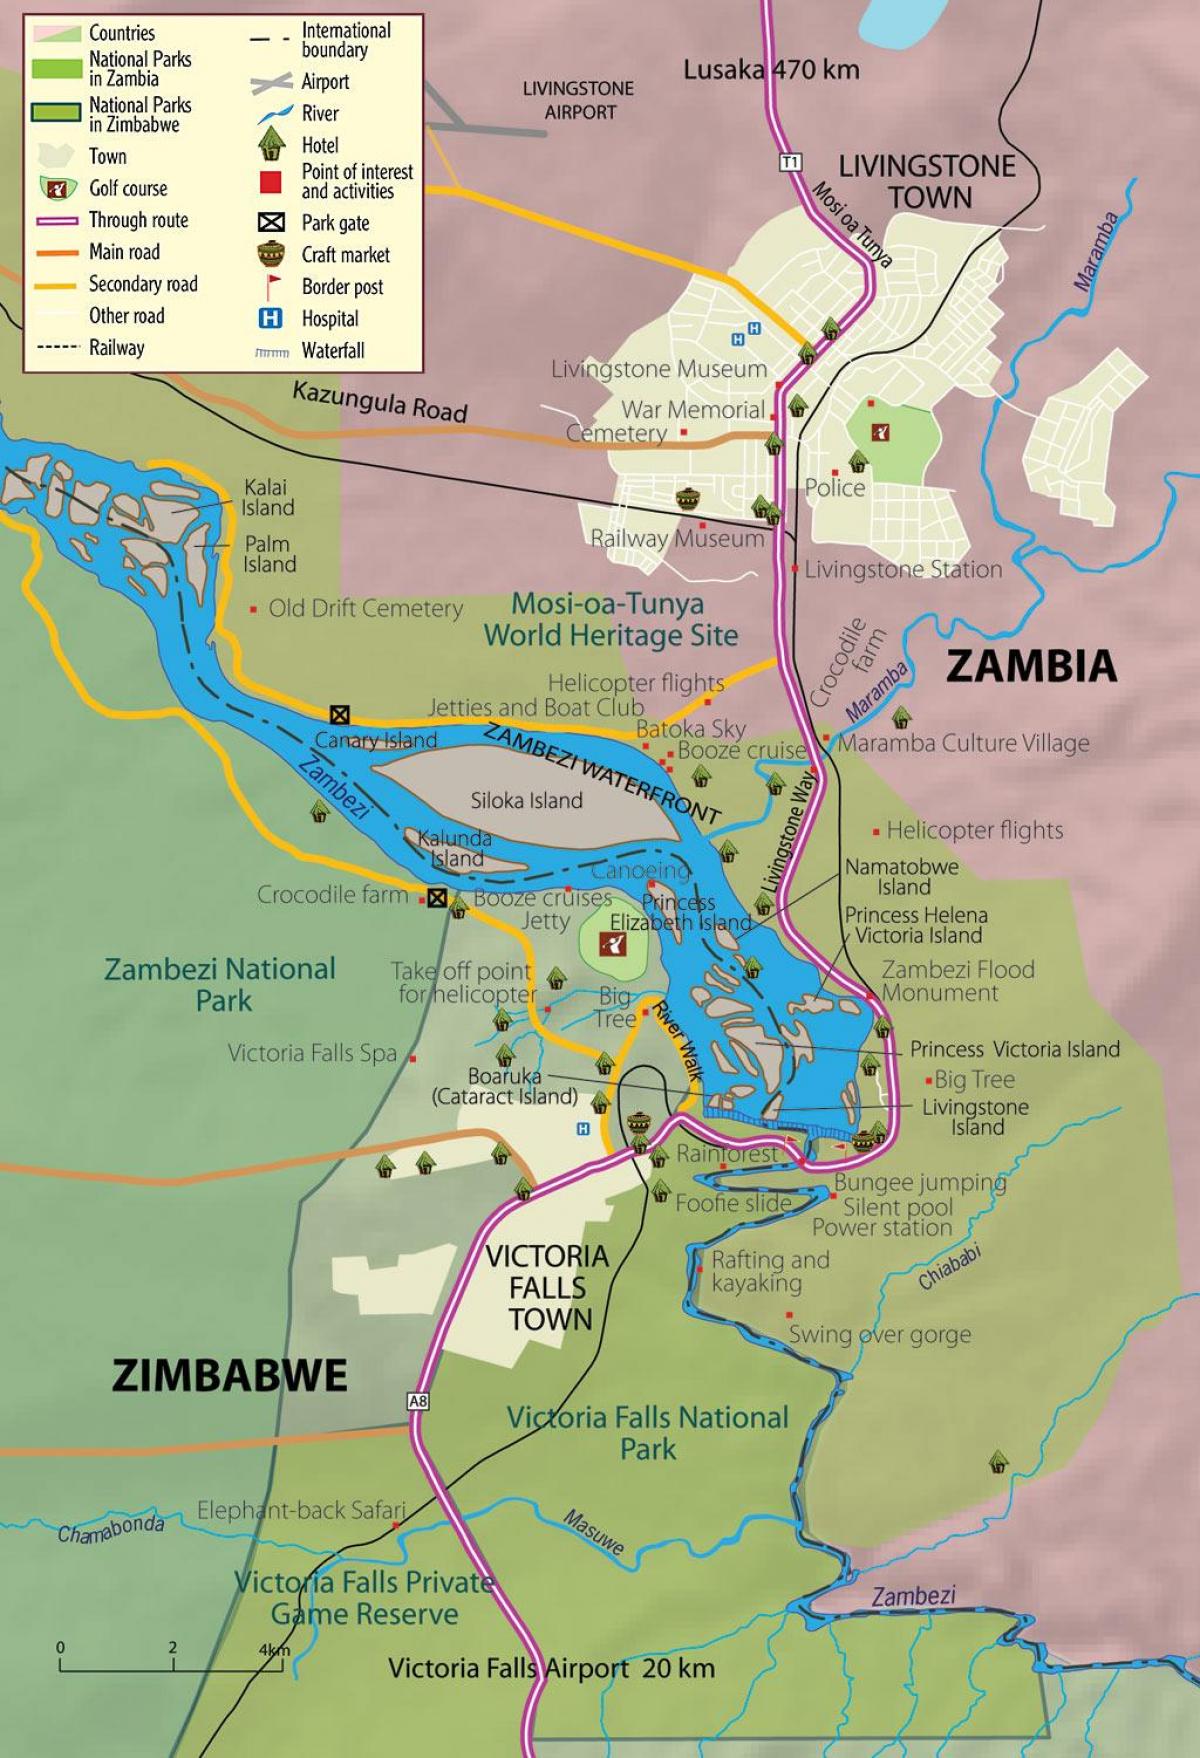 քարտեզ քաղաքի Livingstone Զամբիա 